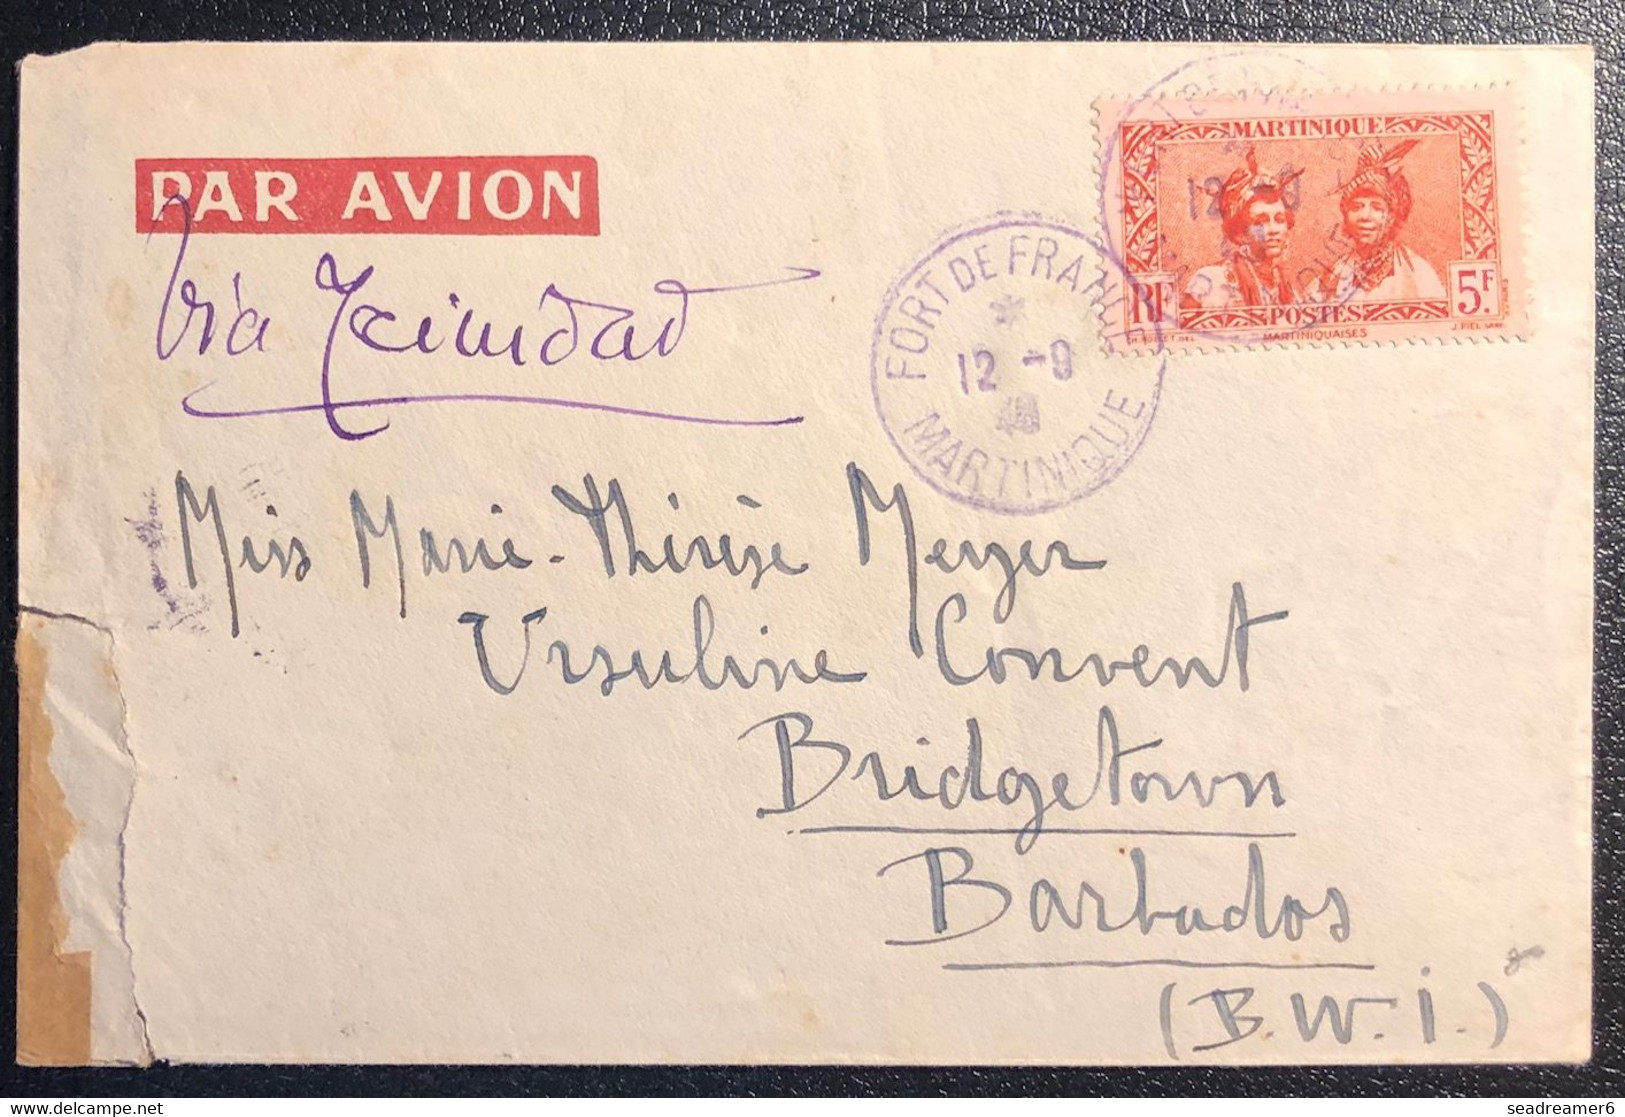 Martinique Lettre Tarif à 5FR 1940 N°152a Type II Obl Fort De France Violet Pour BARBADOS + 2 Censures TTB - Lettres & Documents